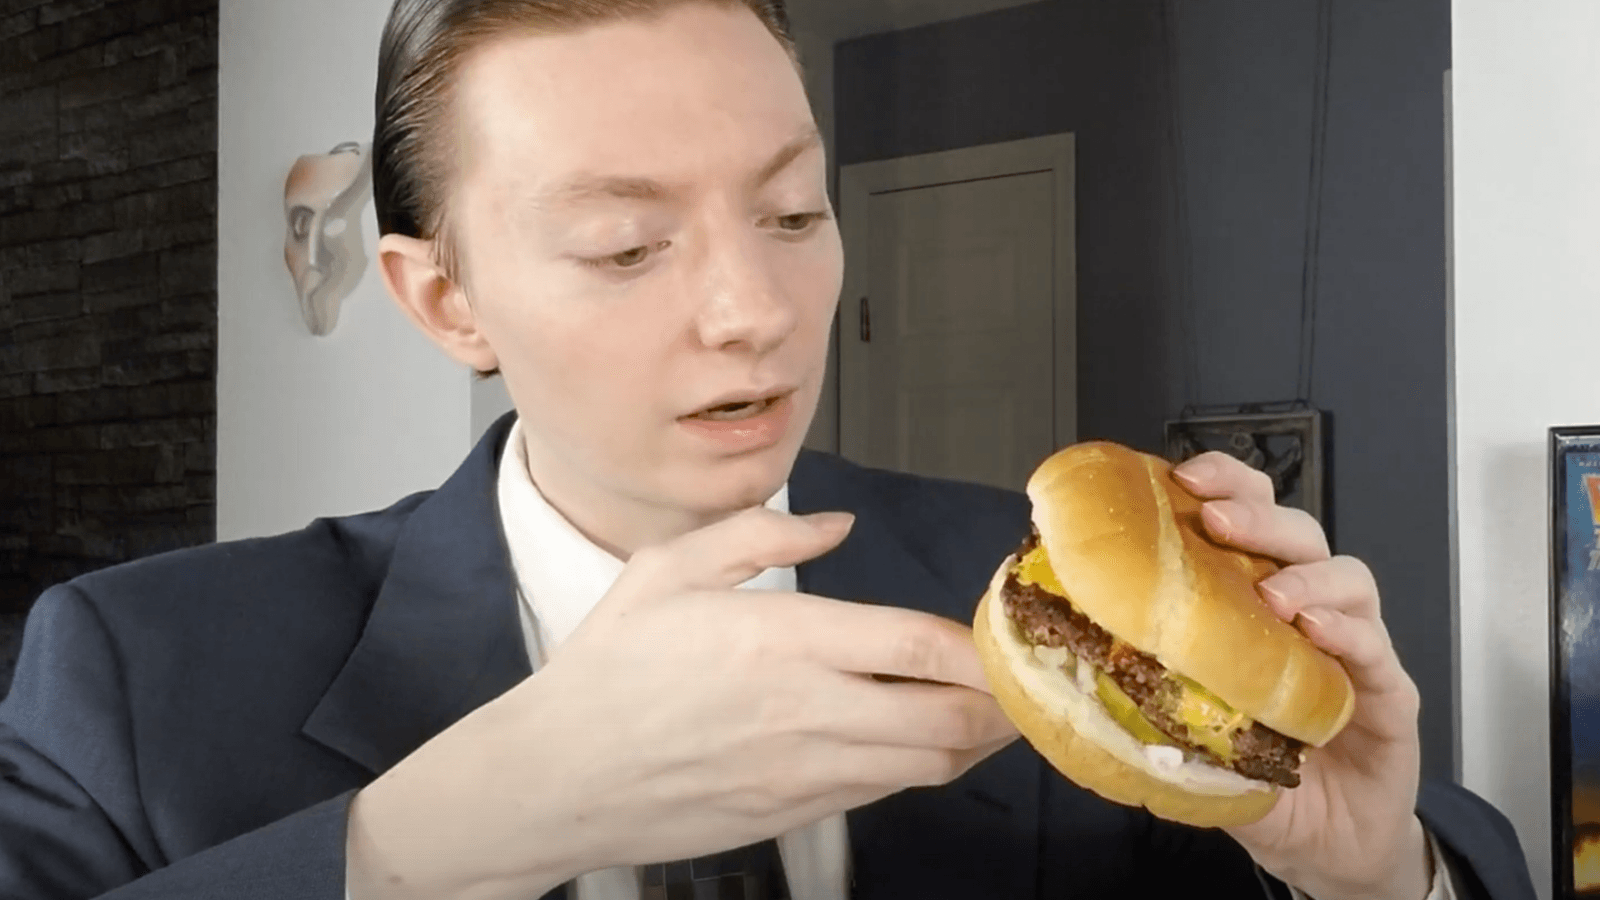 ReviewBrah reviews MrBeast burger